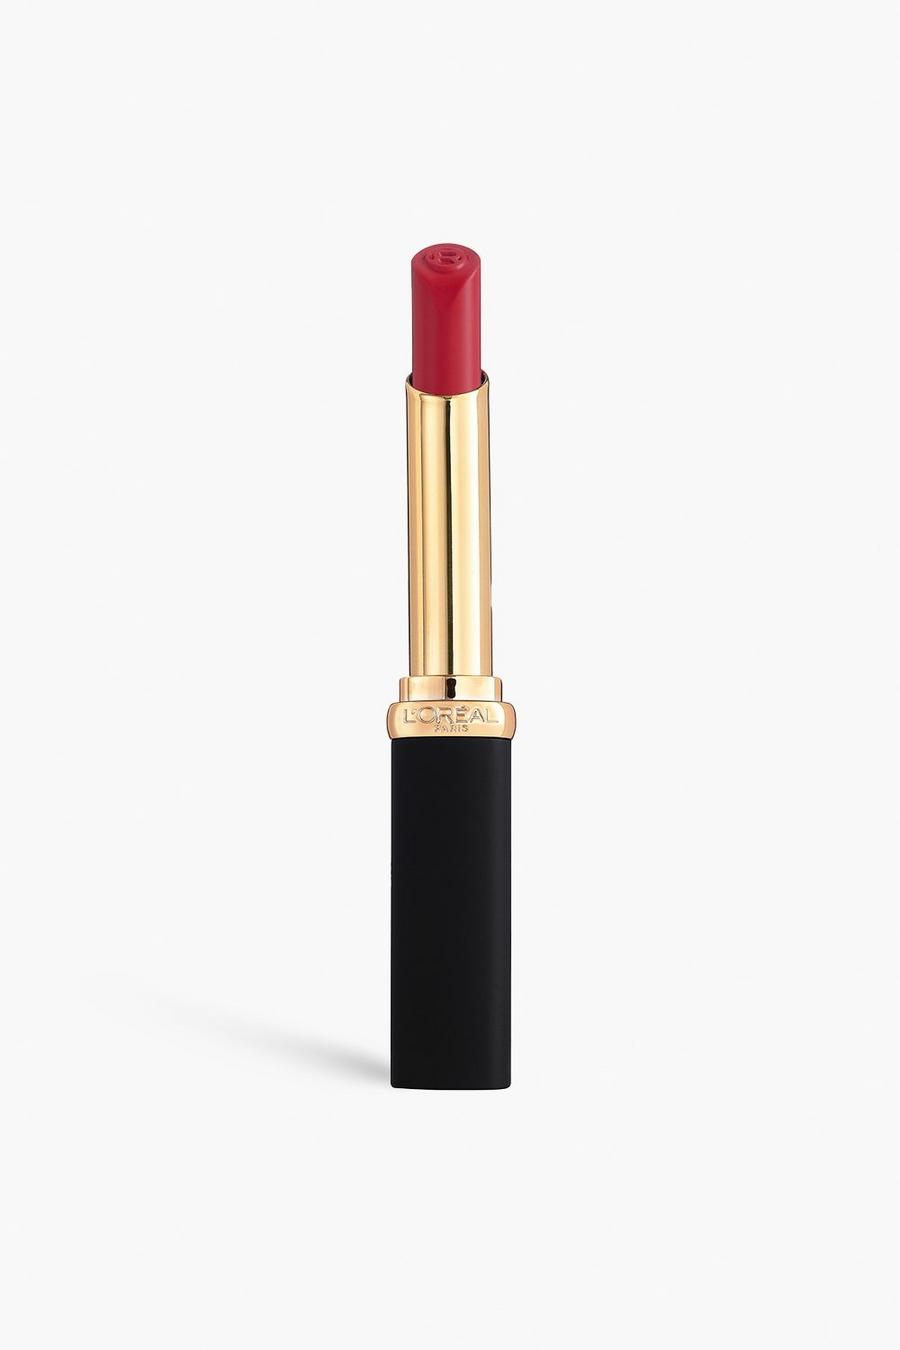 Rose L'Oreal Paris Color Riche Intense Volume Matte, 16Hr Volumizing Matte Lipstick